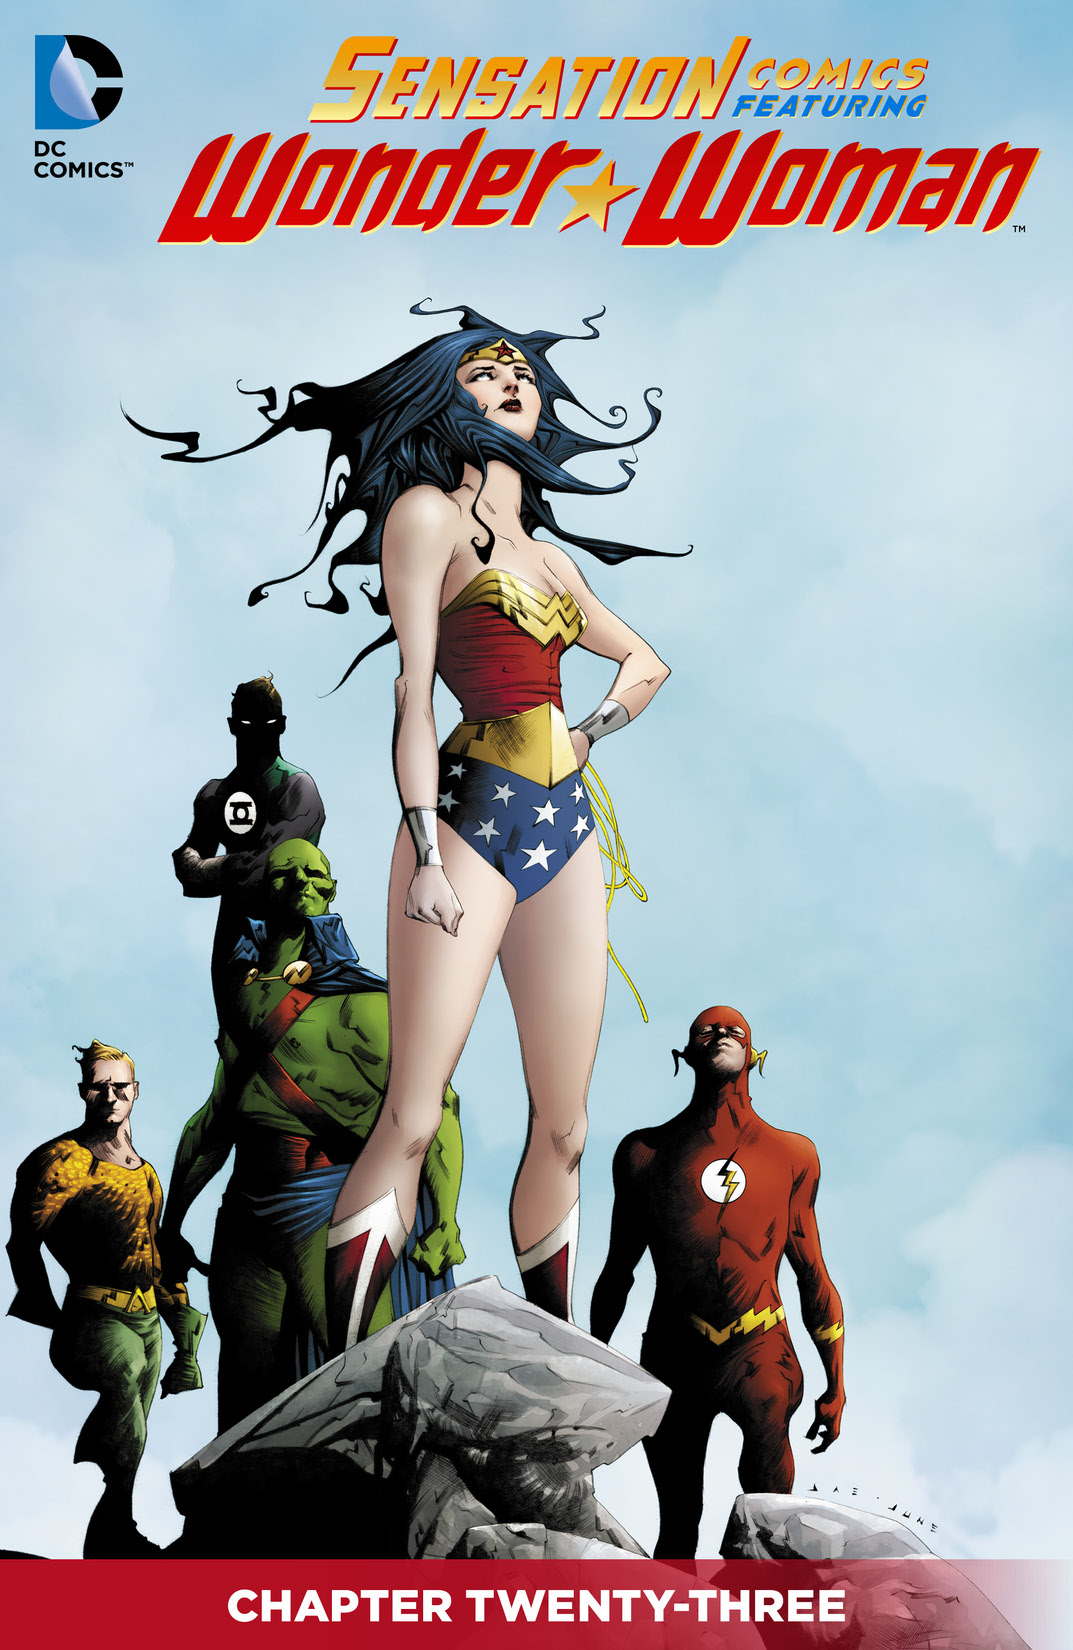 Sensation Comics Featuring Wonder Woman #23 preview images